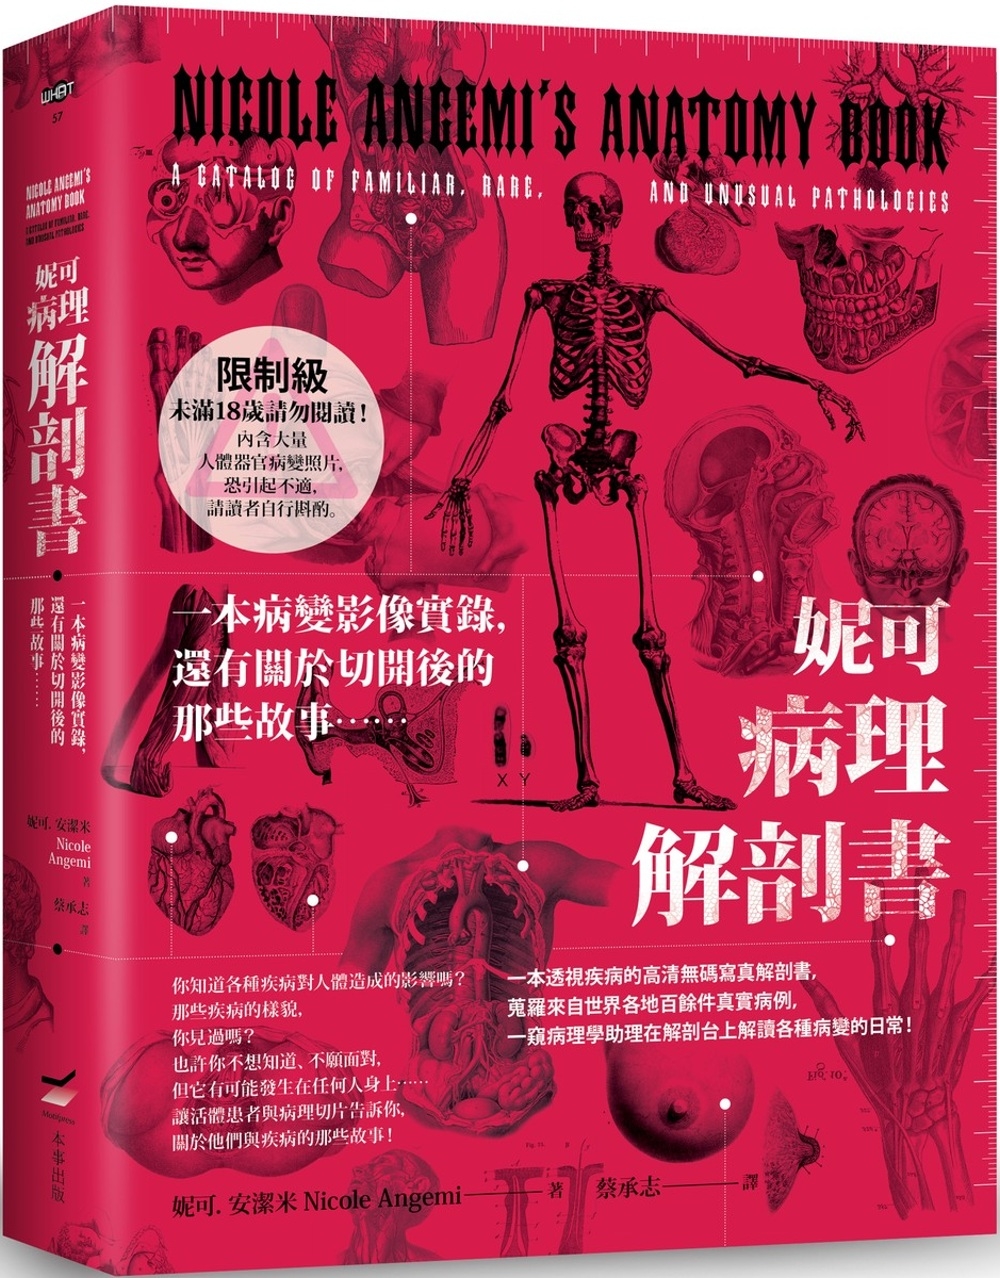 妮可病理解剖書【18禁】：一本病變影像實錄，還有關於切開後的那些故事……(限台灣)